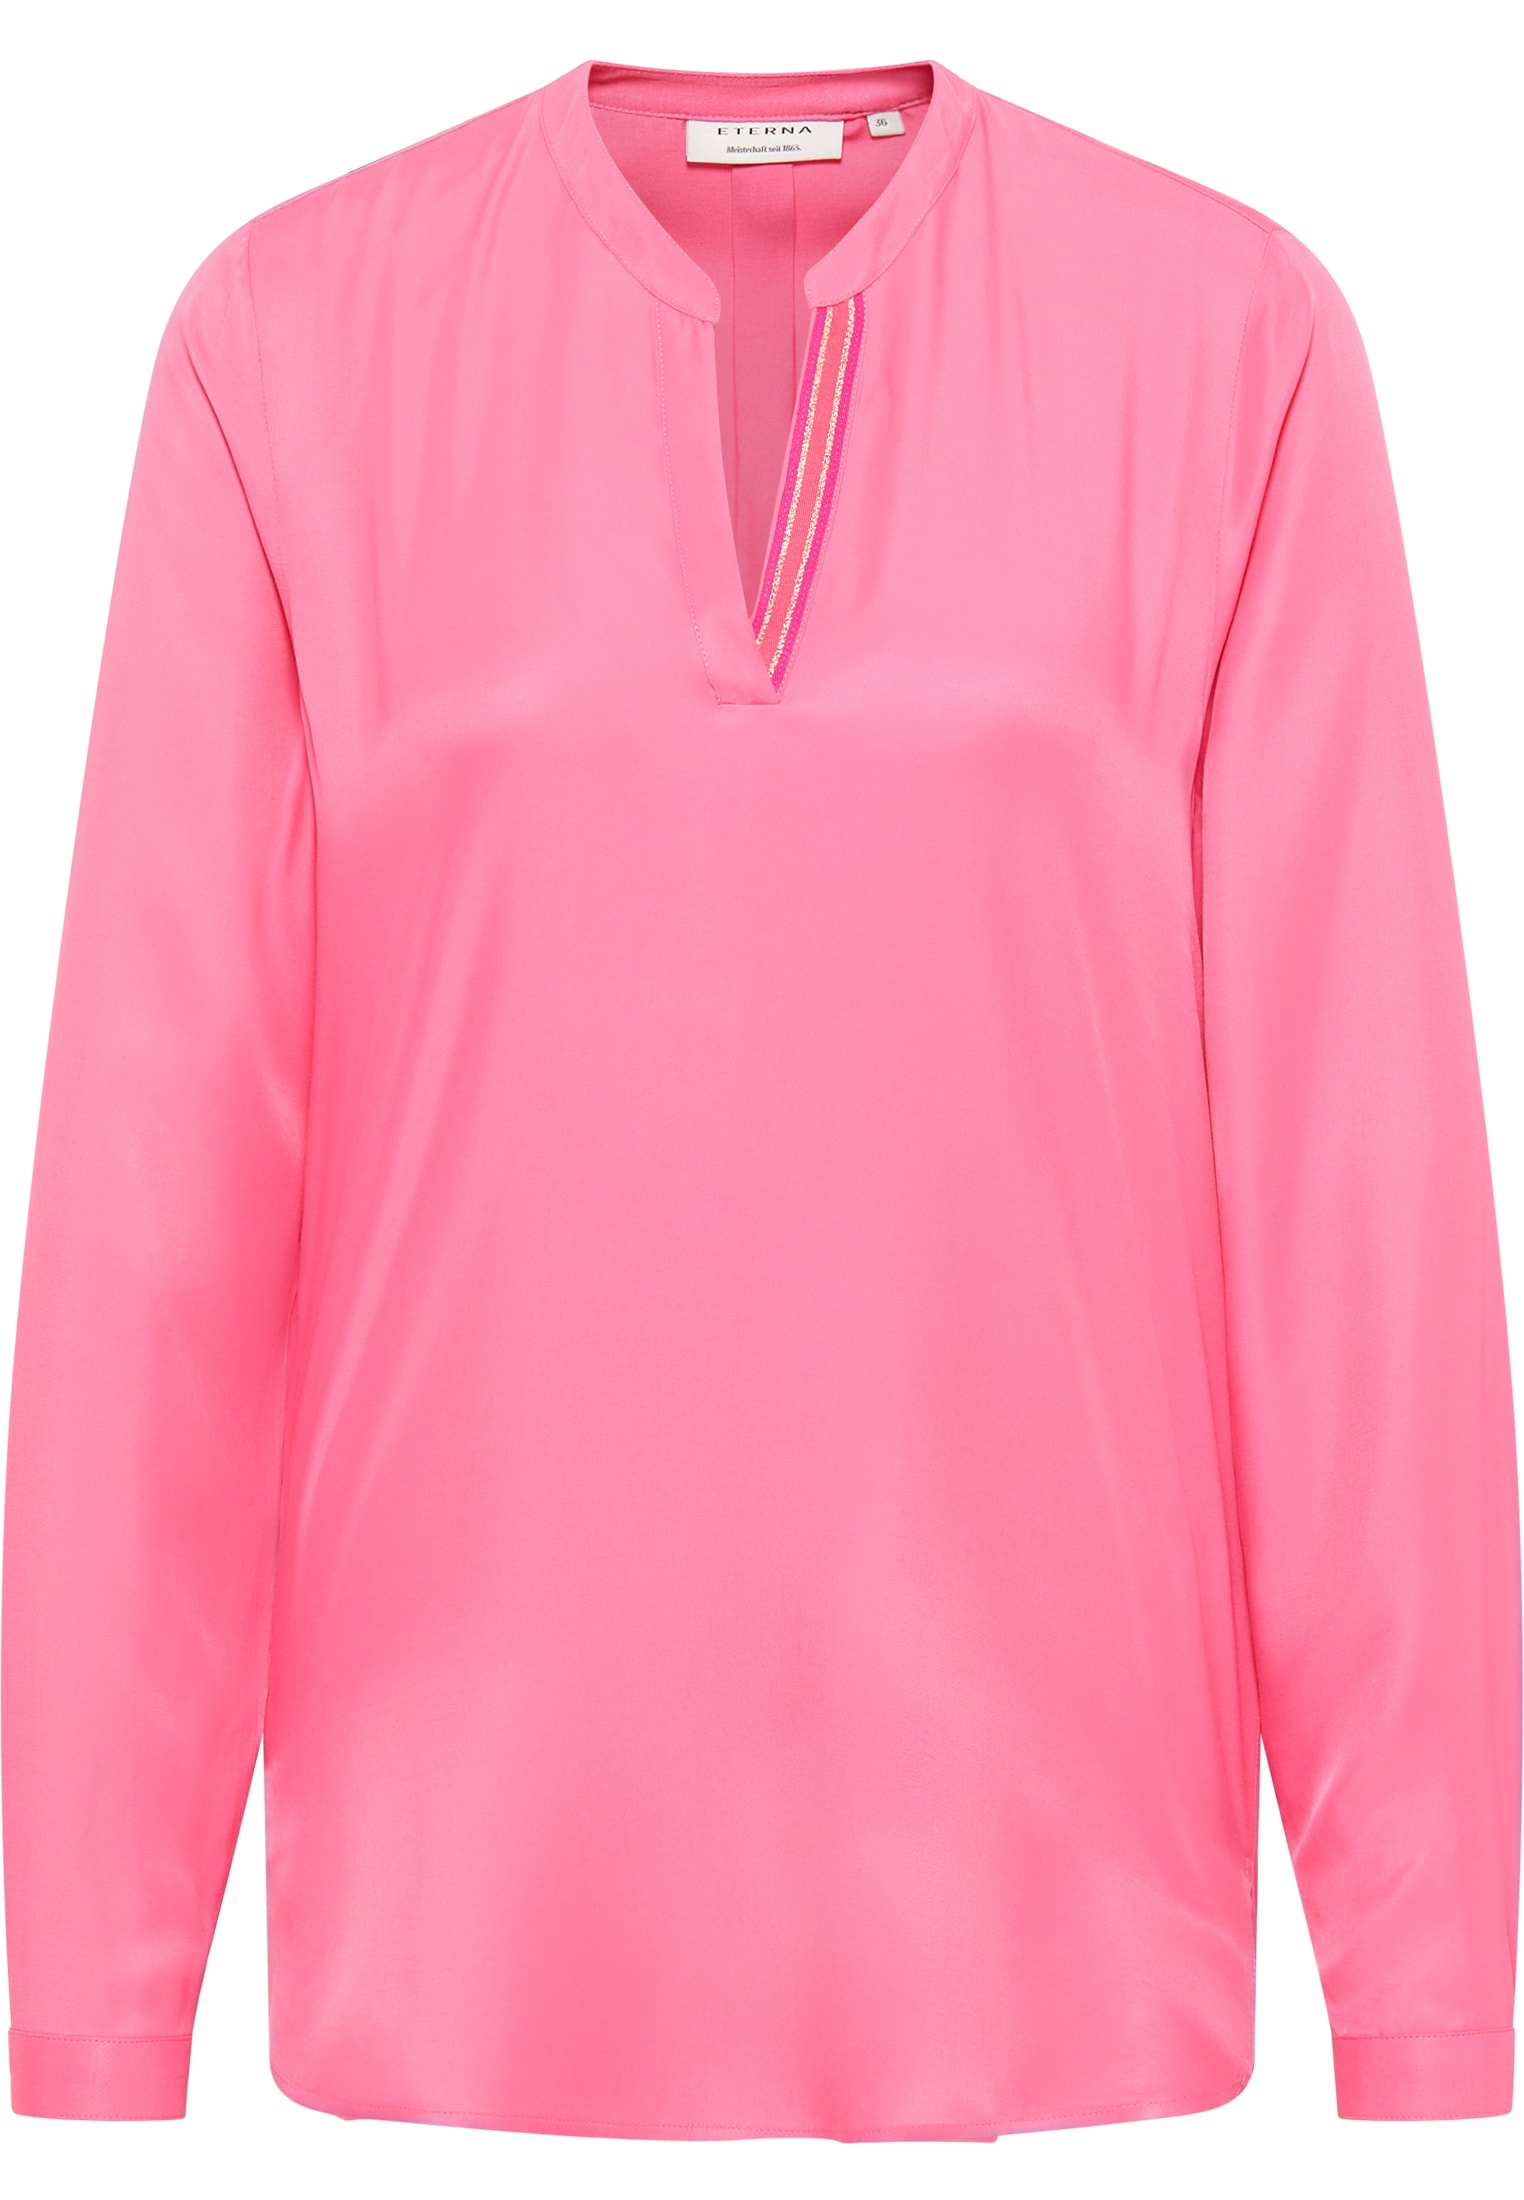 Shirt 36 Viscose | in pink pink Bluse | | 2BL04272-15-21-36-1/1 unifarben Langarm |